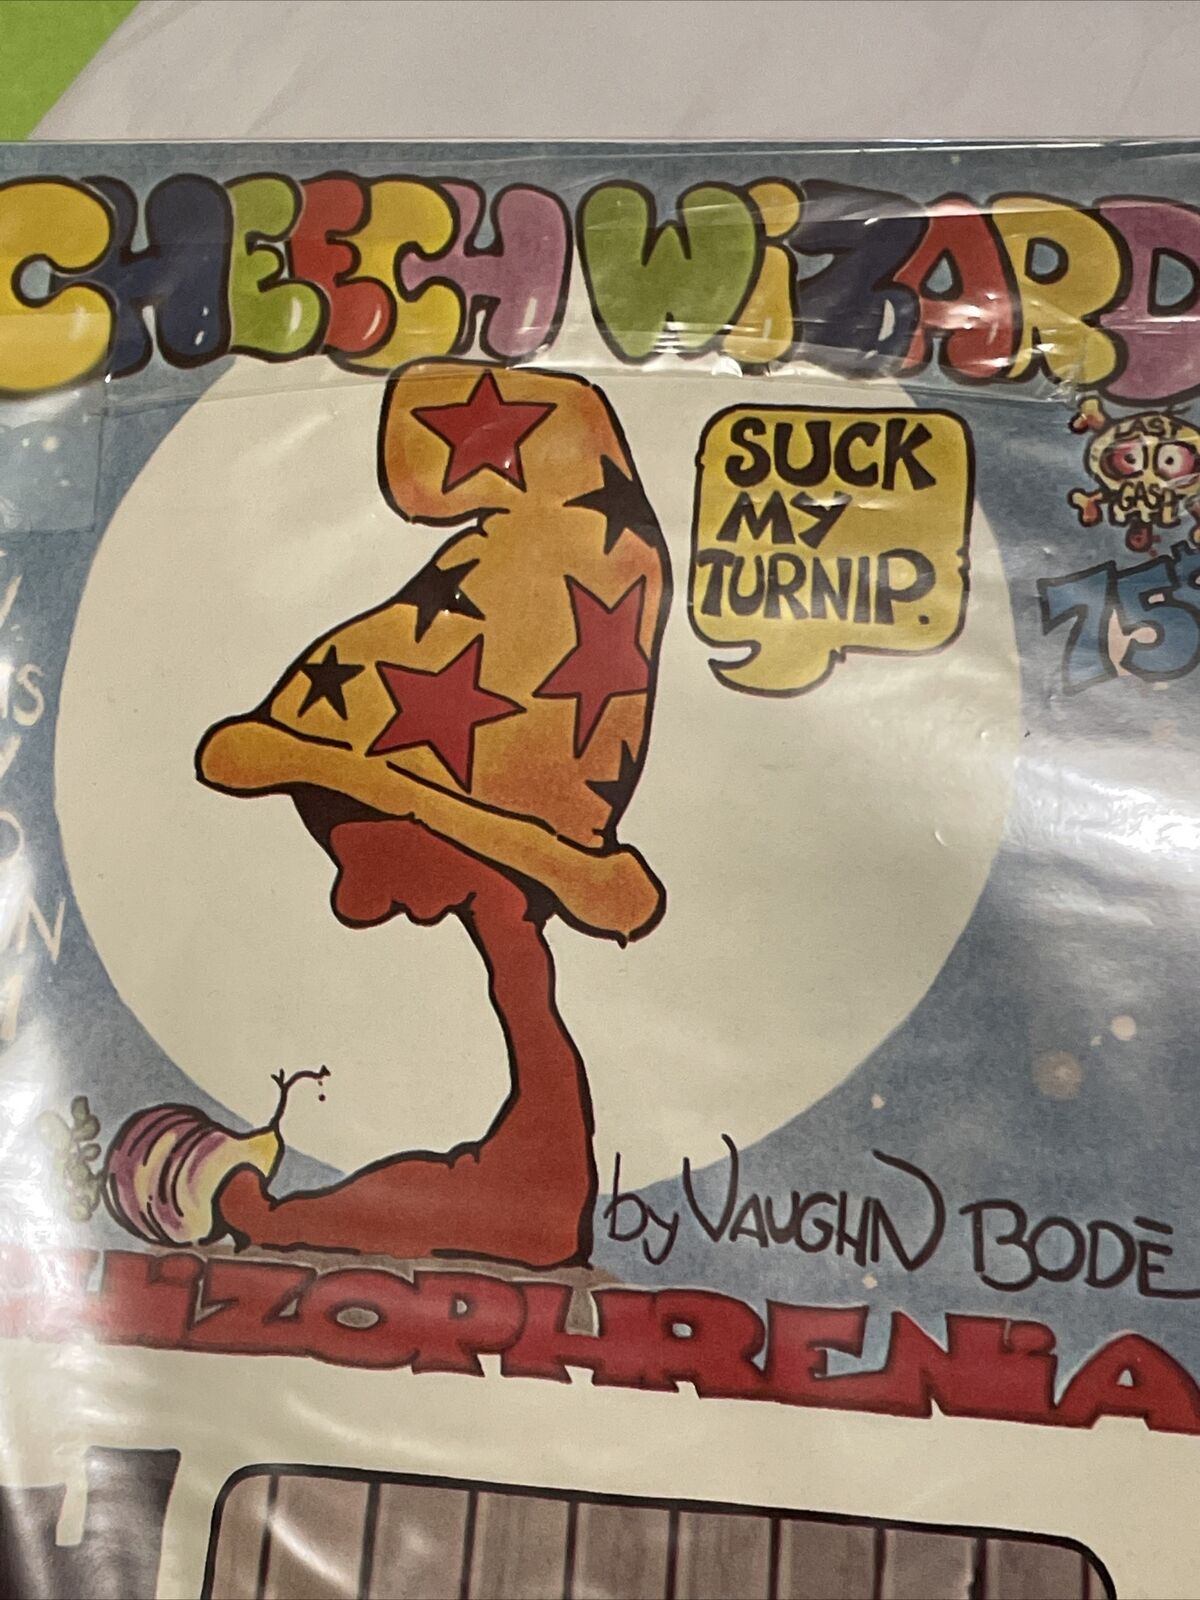 Vaughn Bode original Cheech Wizard Comic - Schizophrenia from 1973